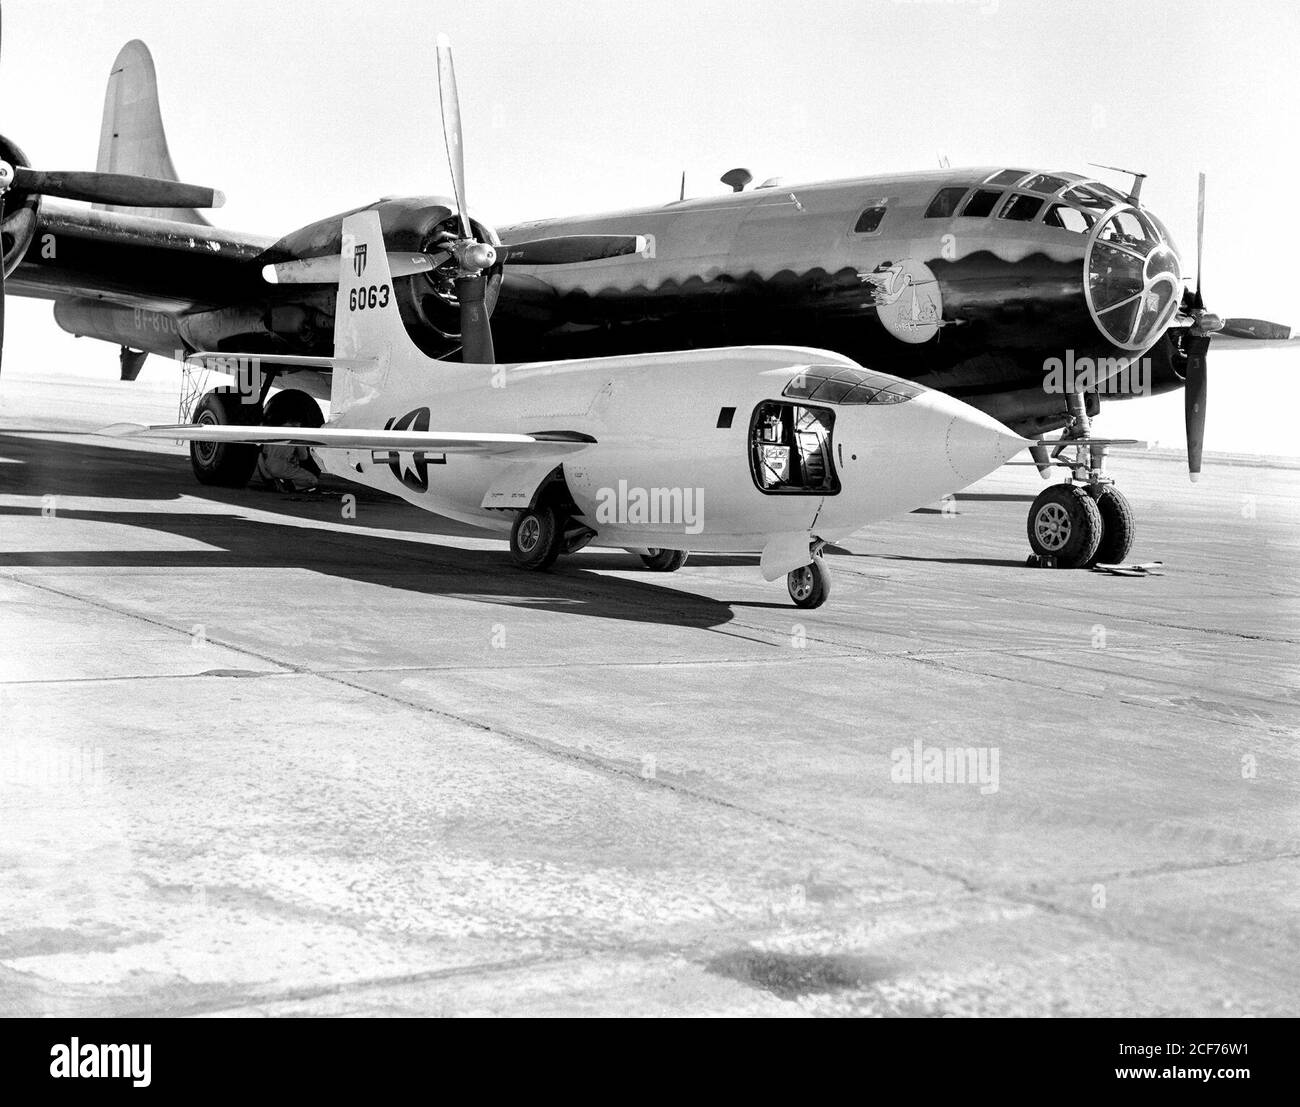 El Bell Aircraft Corporation X-1-2 sentado en la rampa de la Estación de Investigación de Vuelo de Alta velocidad NACA con el buque de lanzamiento Boeing B-29 detrás. El B-29 fue cariñosamente referido como "mirto fértil". La pintura cerca de la nariz representa una cigüeña que lleva un mazo que es simbólico de la nave madre que lanza su bebé (X-1-2). La puerta de acceso del piloto está abierta a la cabina del avión X-1-2. Foto de stock